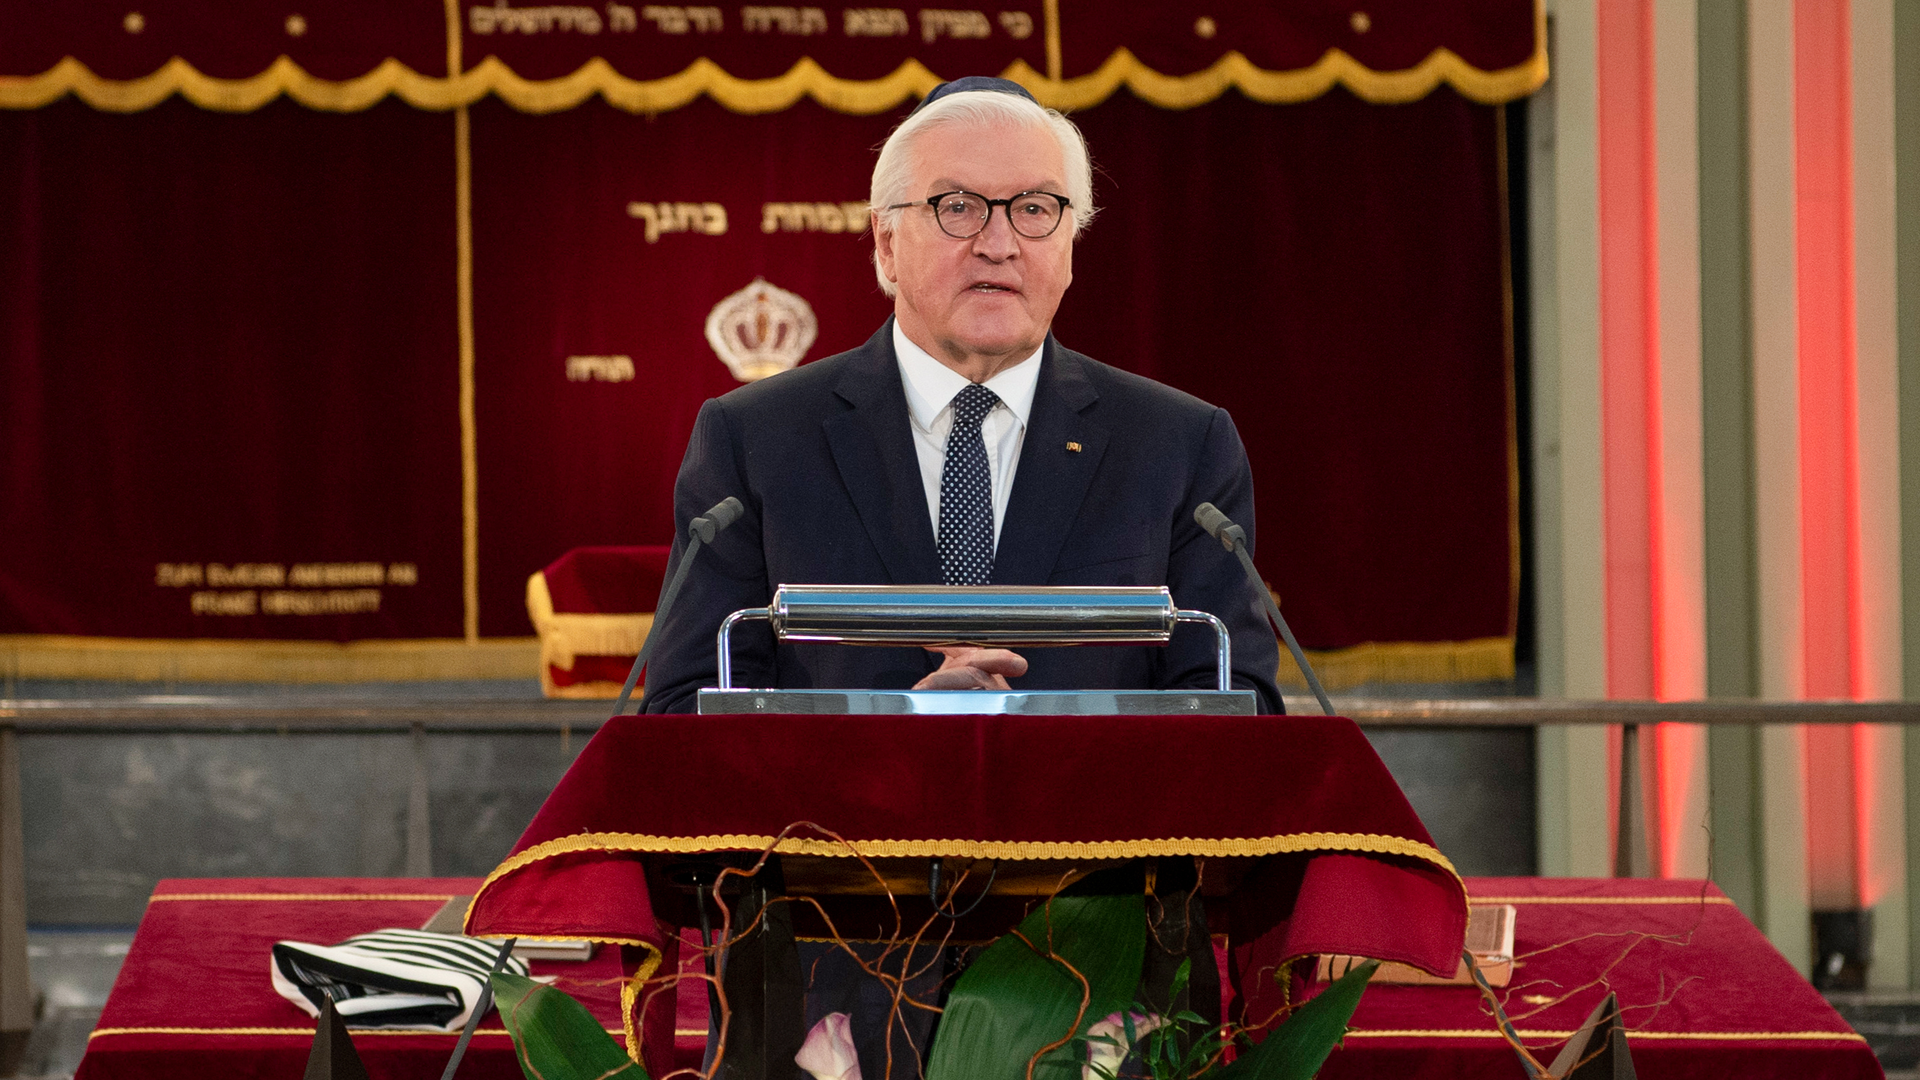 Bundespräsident Frank-Walter Steinmeier trug bei dem Festakt eine Kippa